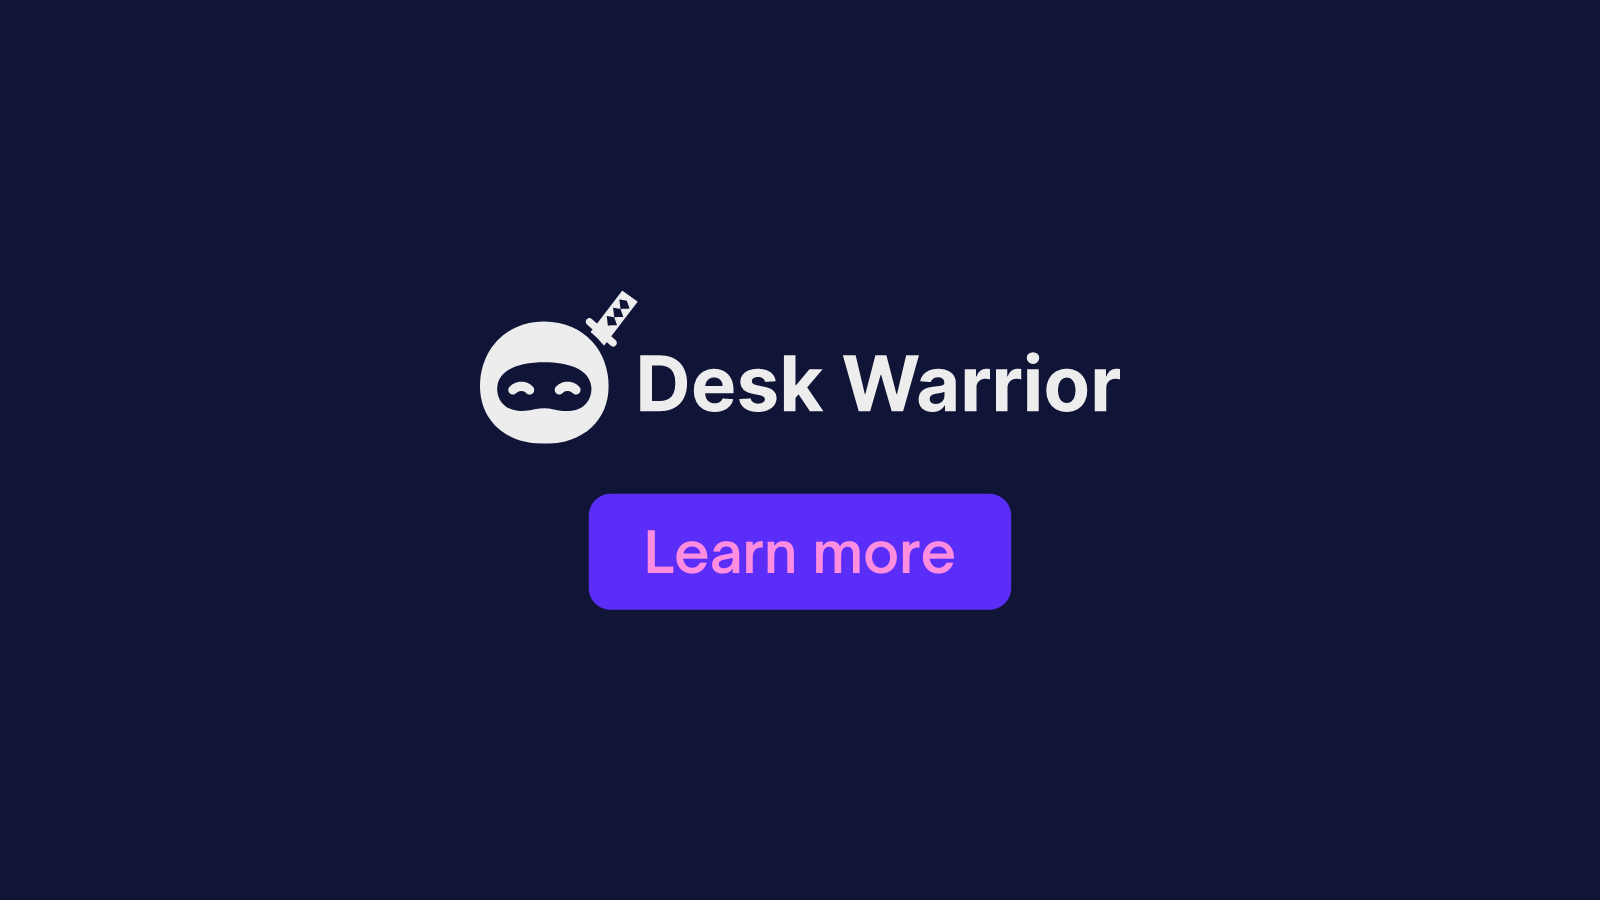 Desk Warrior